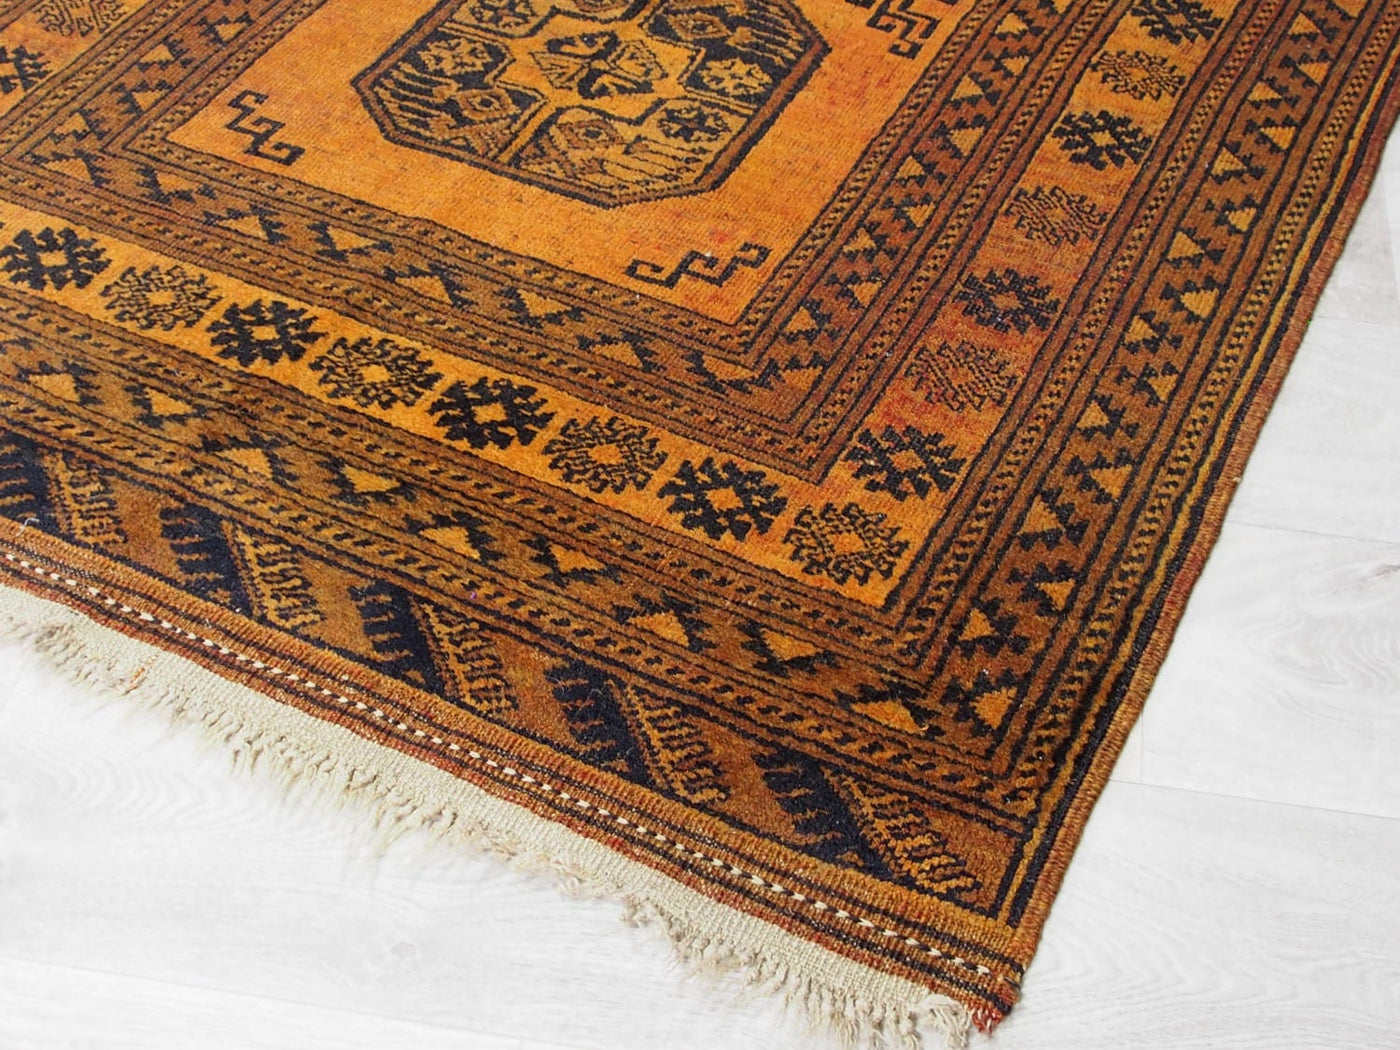 155x112 cm antik orient Nomaden Teppich Turkmen Ersari bukhara Carpet Rug NR17/8  Orientsbazar   